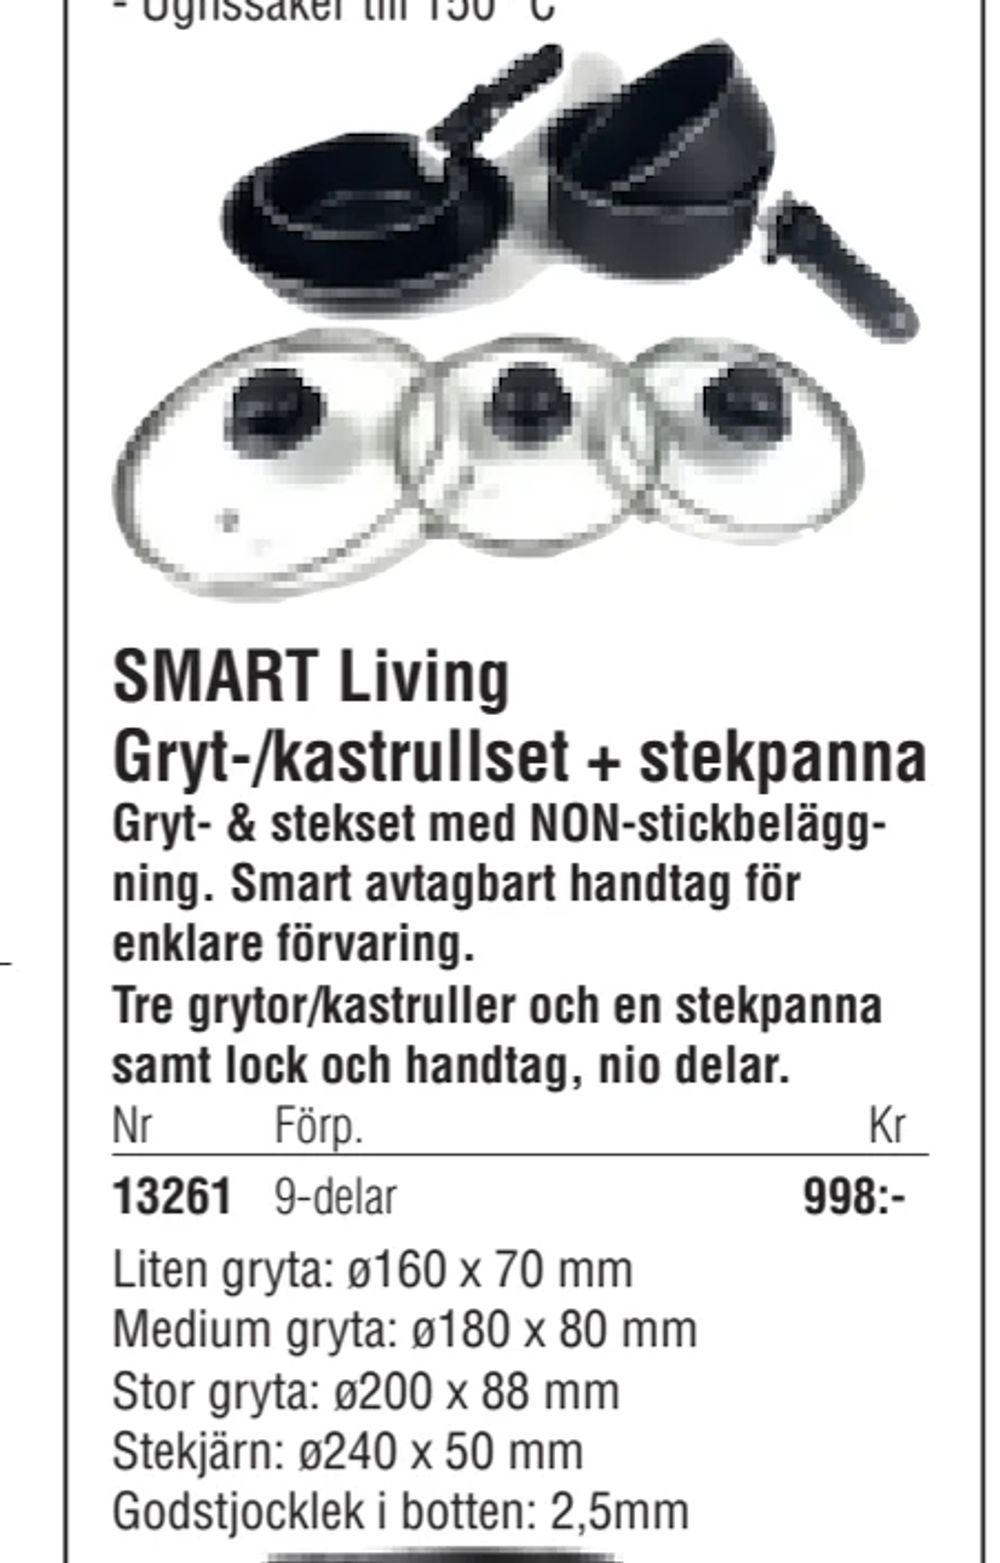 Erbjudanden på SMART Living Gryt-/kastrullset + stekpanna från Erlandsons Brygga för 998 kr